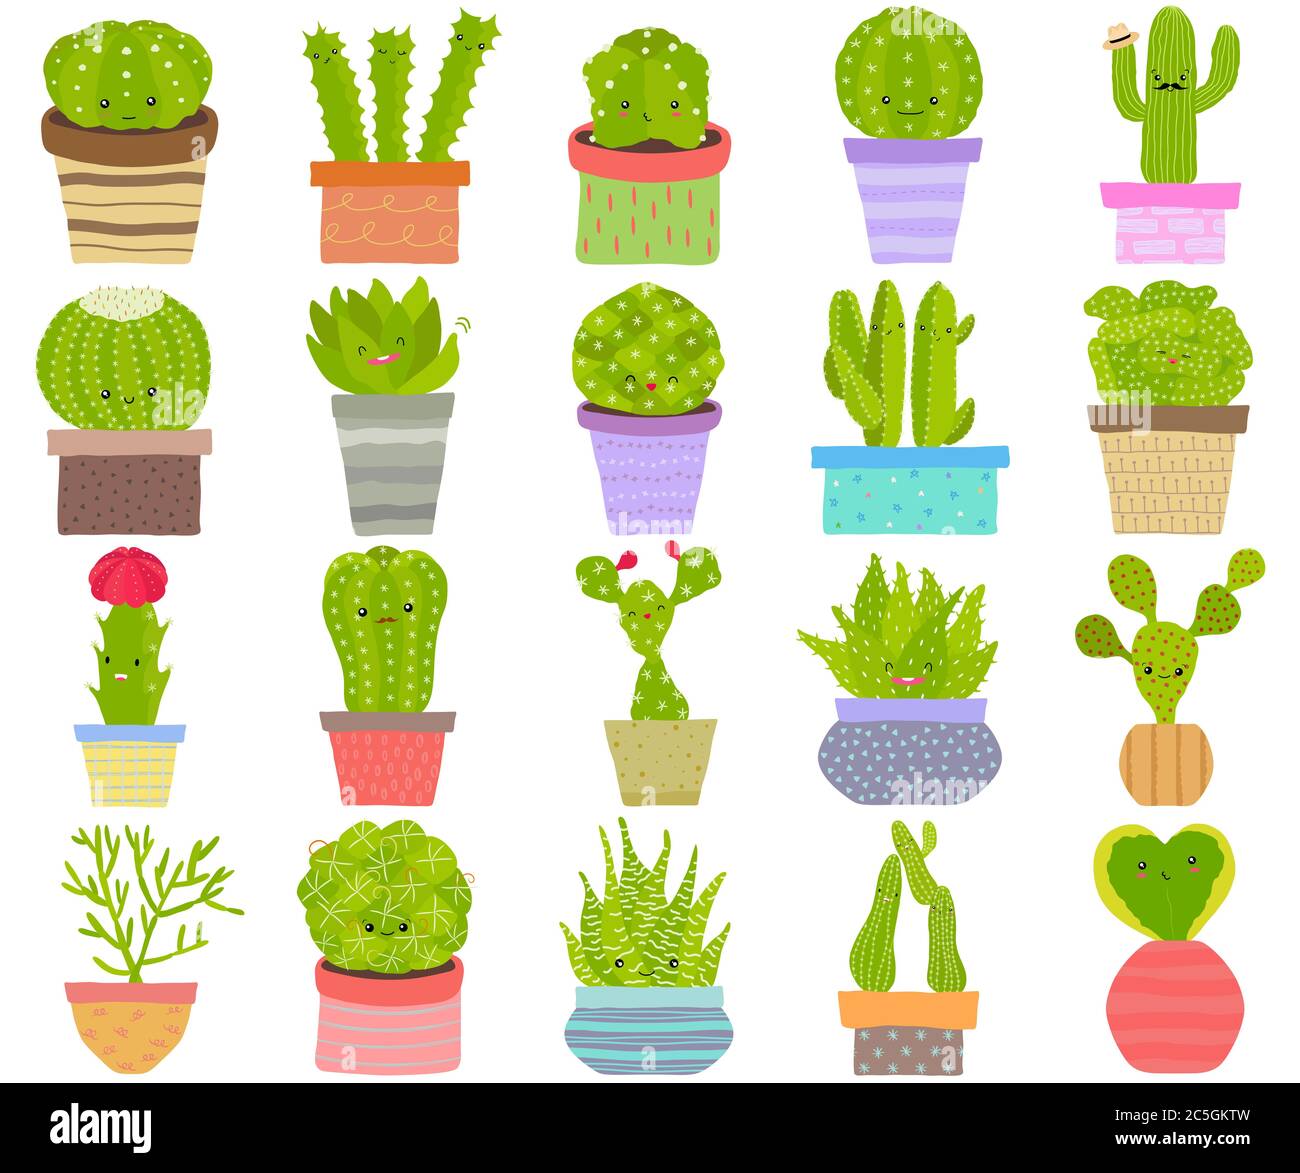 Serie vettoriale di cactus cactus aloe piante succulente con viso in vaso. Collezione di piante esotiche disegnate a mano in stile piatto. Simpatica illustrazione isolata Illustrazione Vettoriale